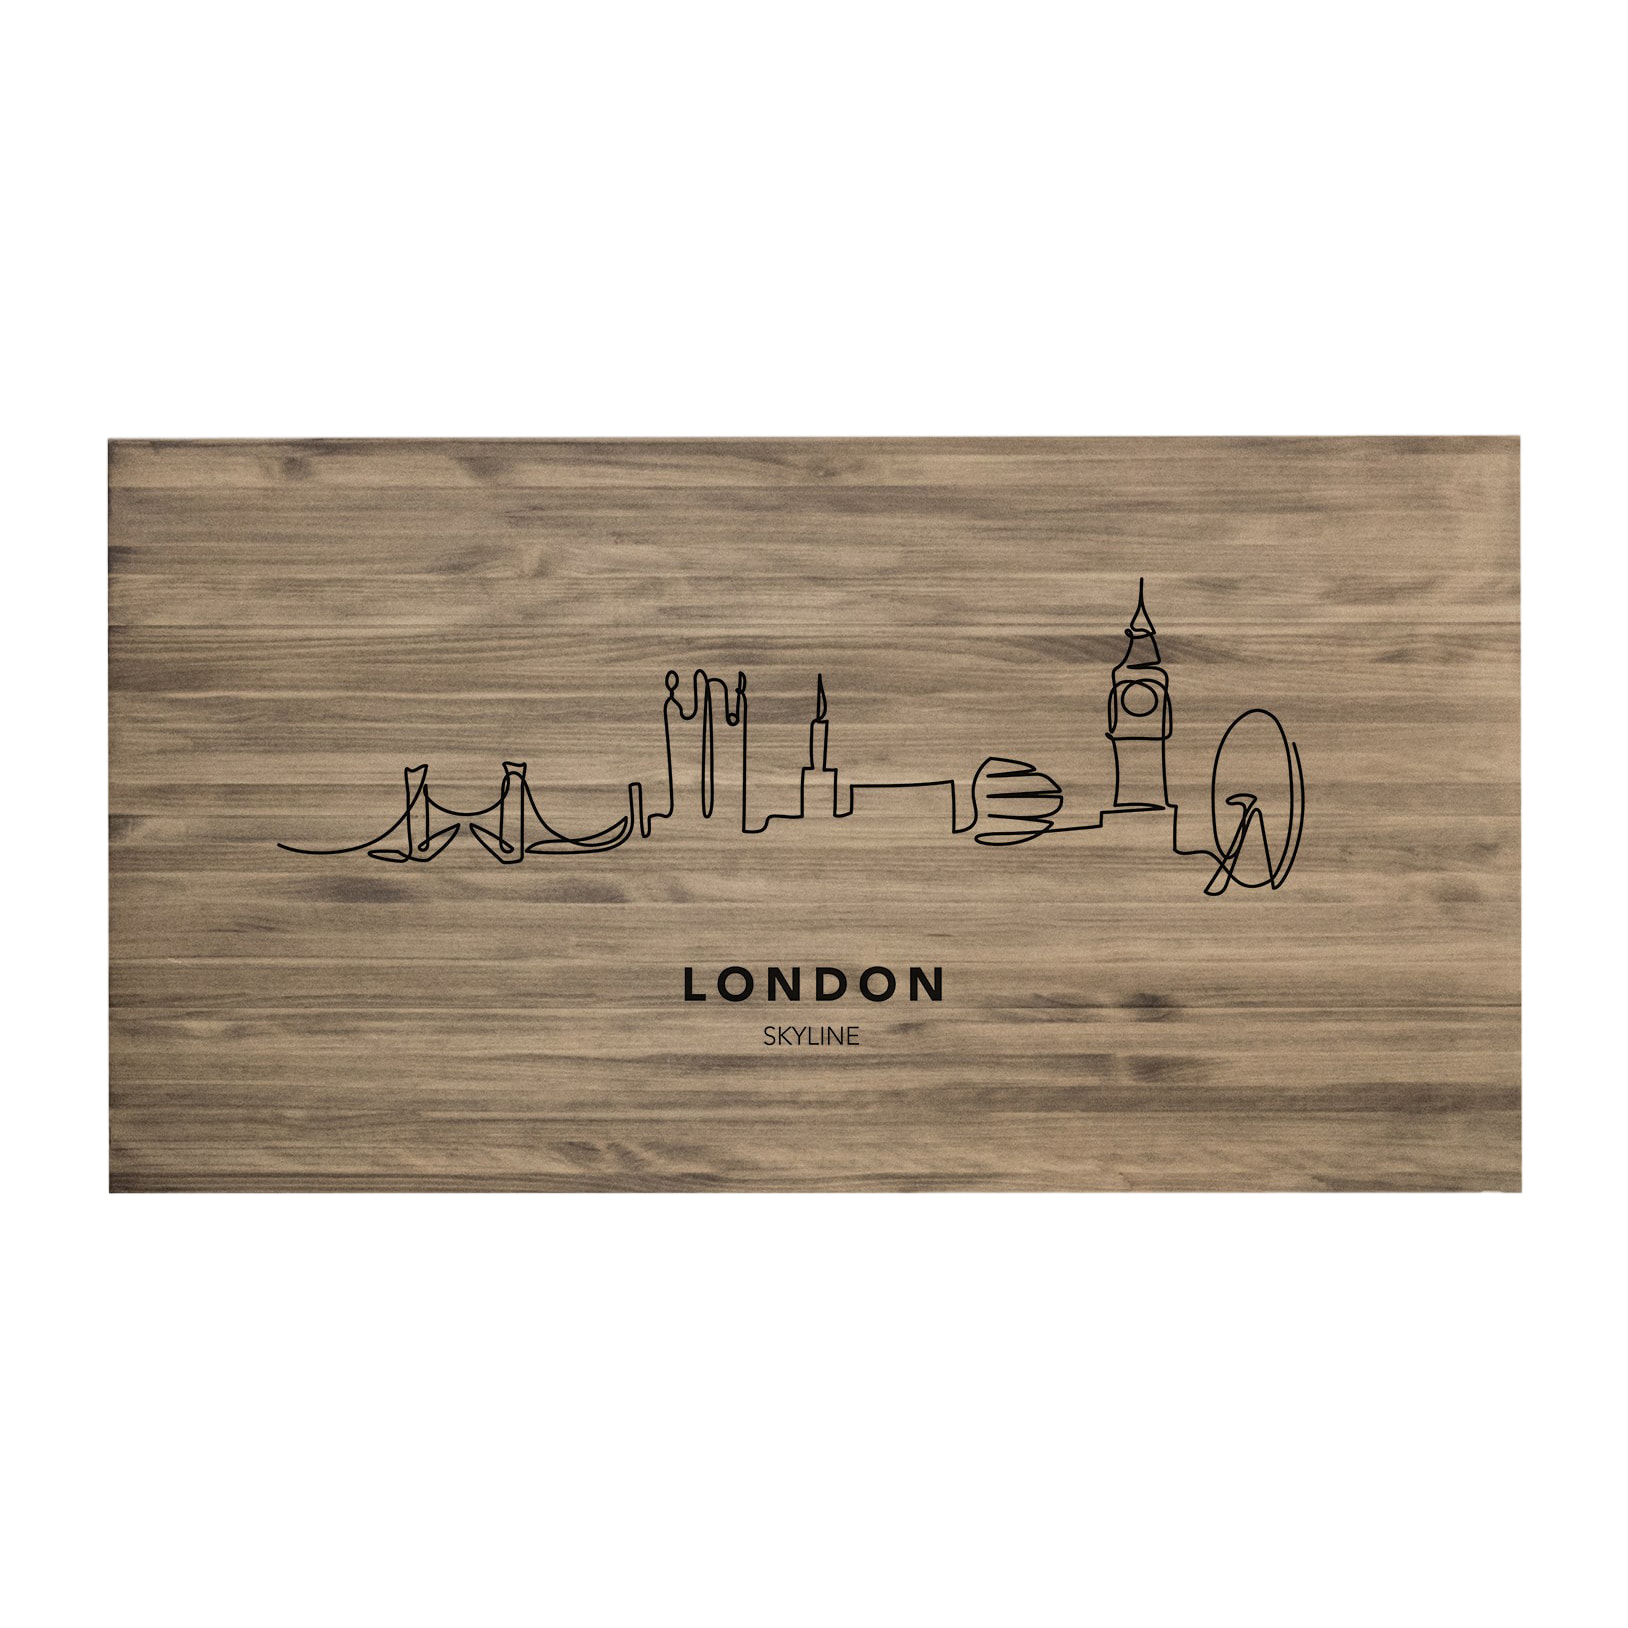 Tête de lit en bois massif imprimée motif London Skyline en ton chêne foncé de différentes tailles